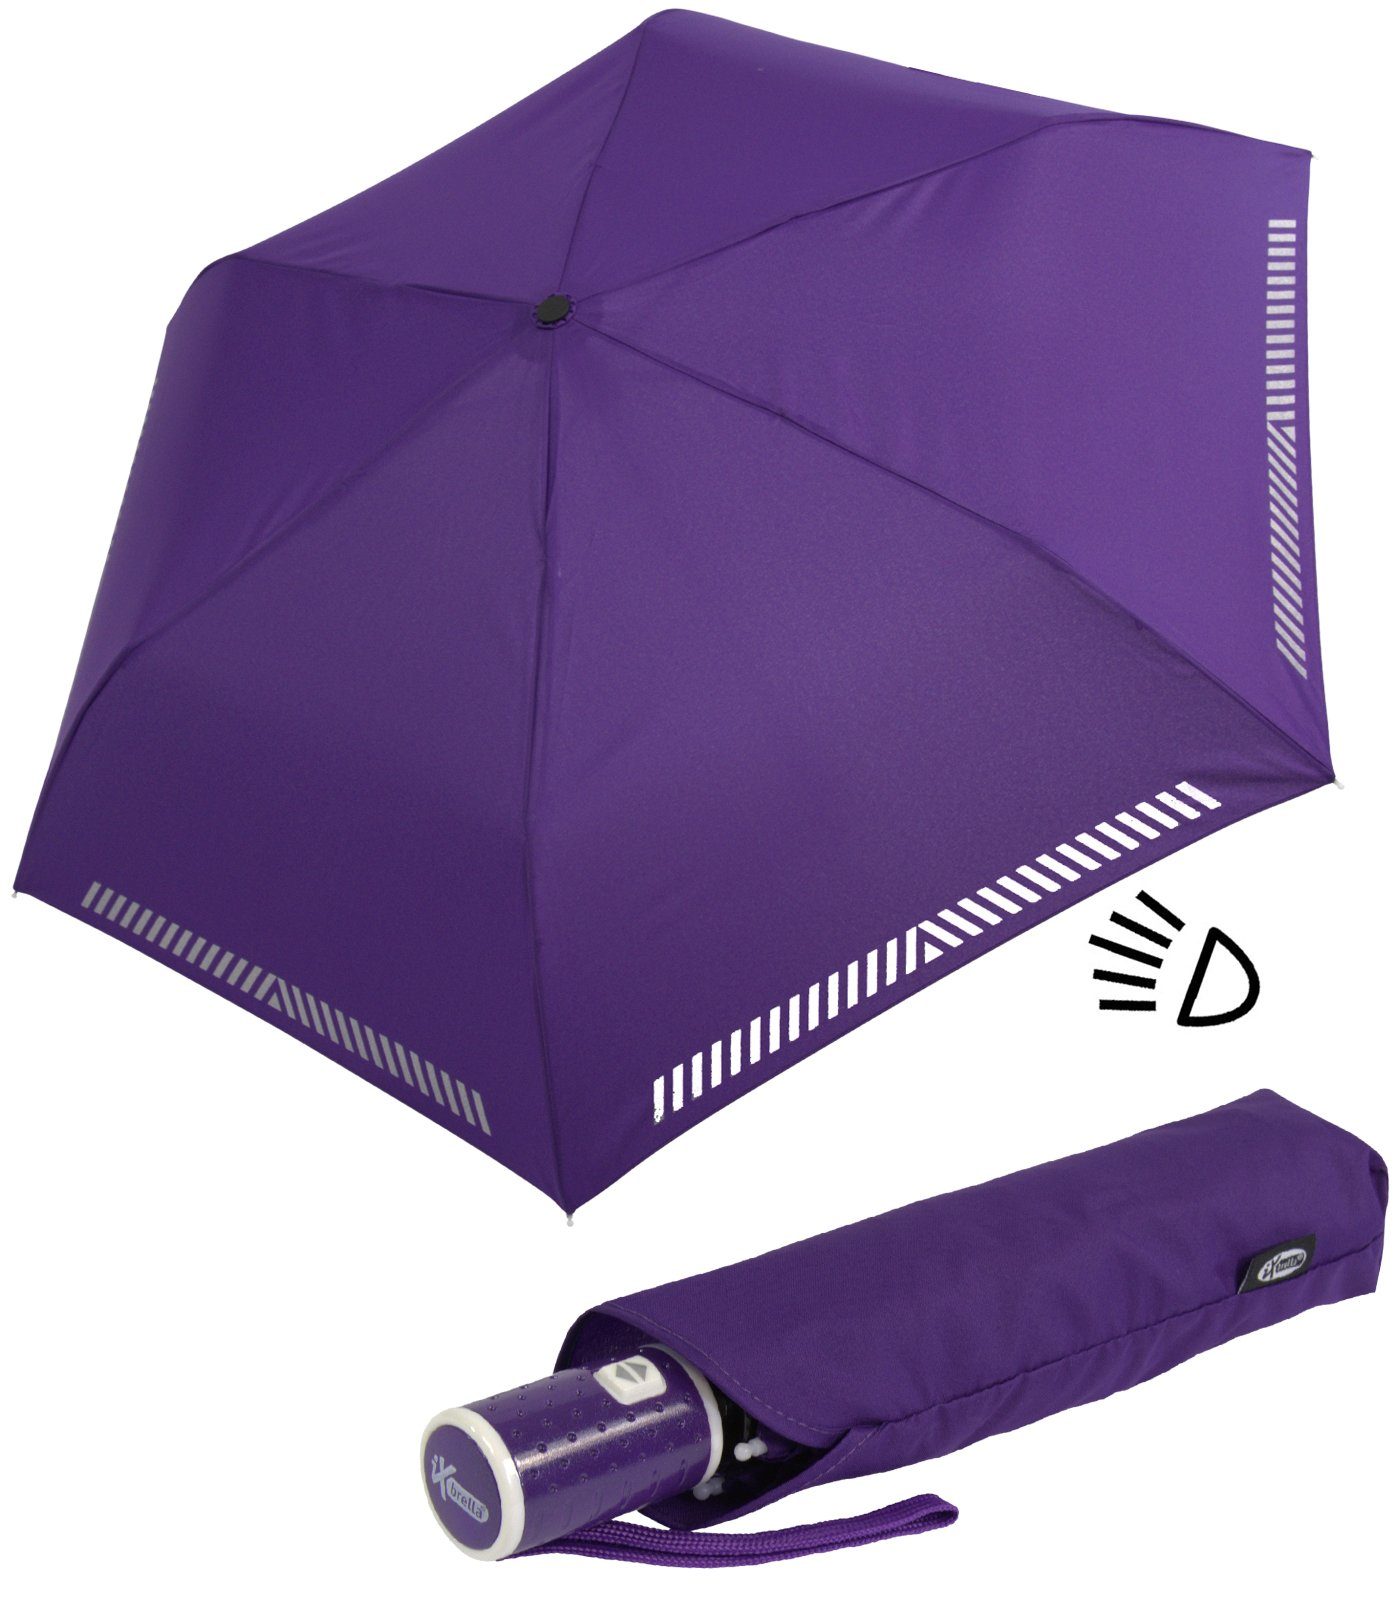 Neue Funktion! iX-brella Taschenregenschirm Kinderschirm mit durch - Reflex-Streifen Sicherheit Auf-Zu-Automatik, reflektierend, berry